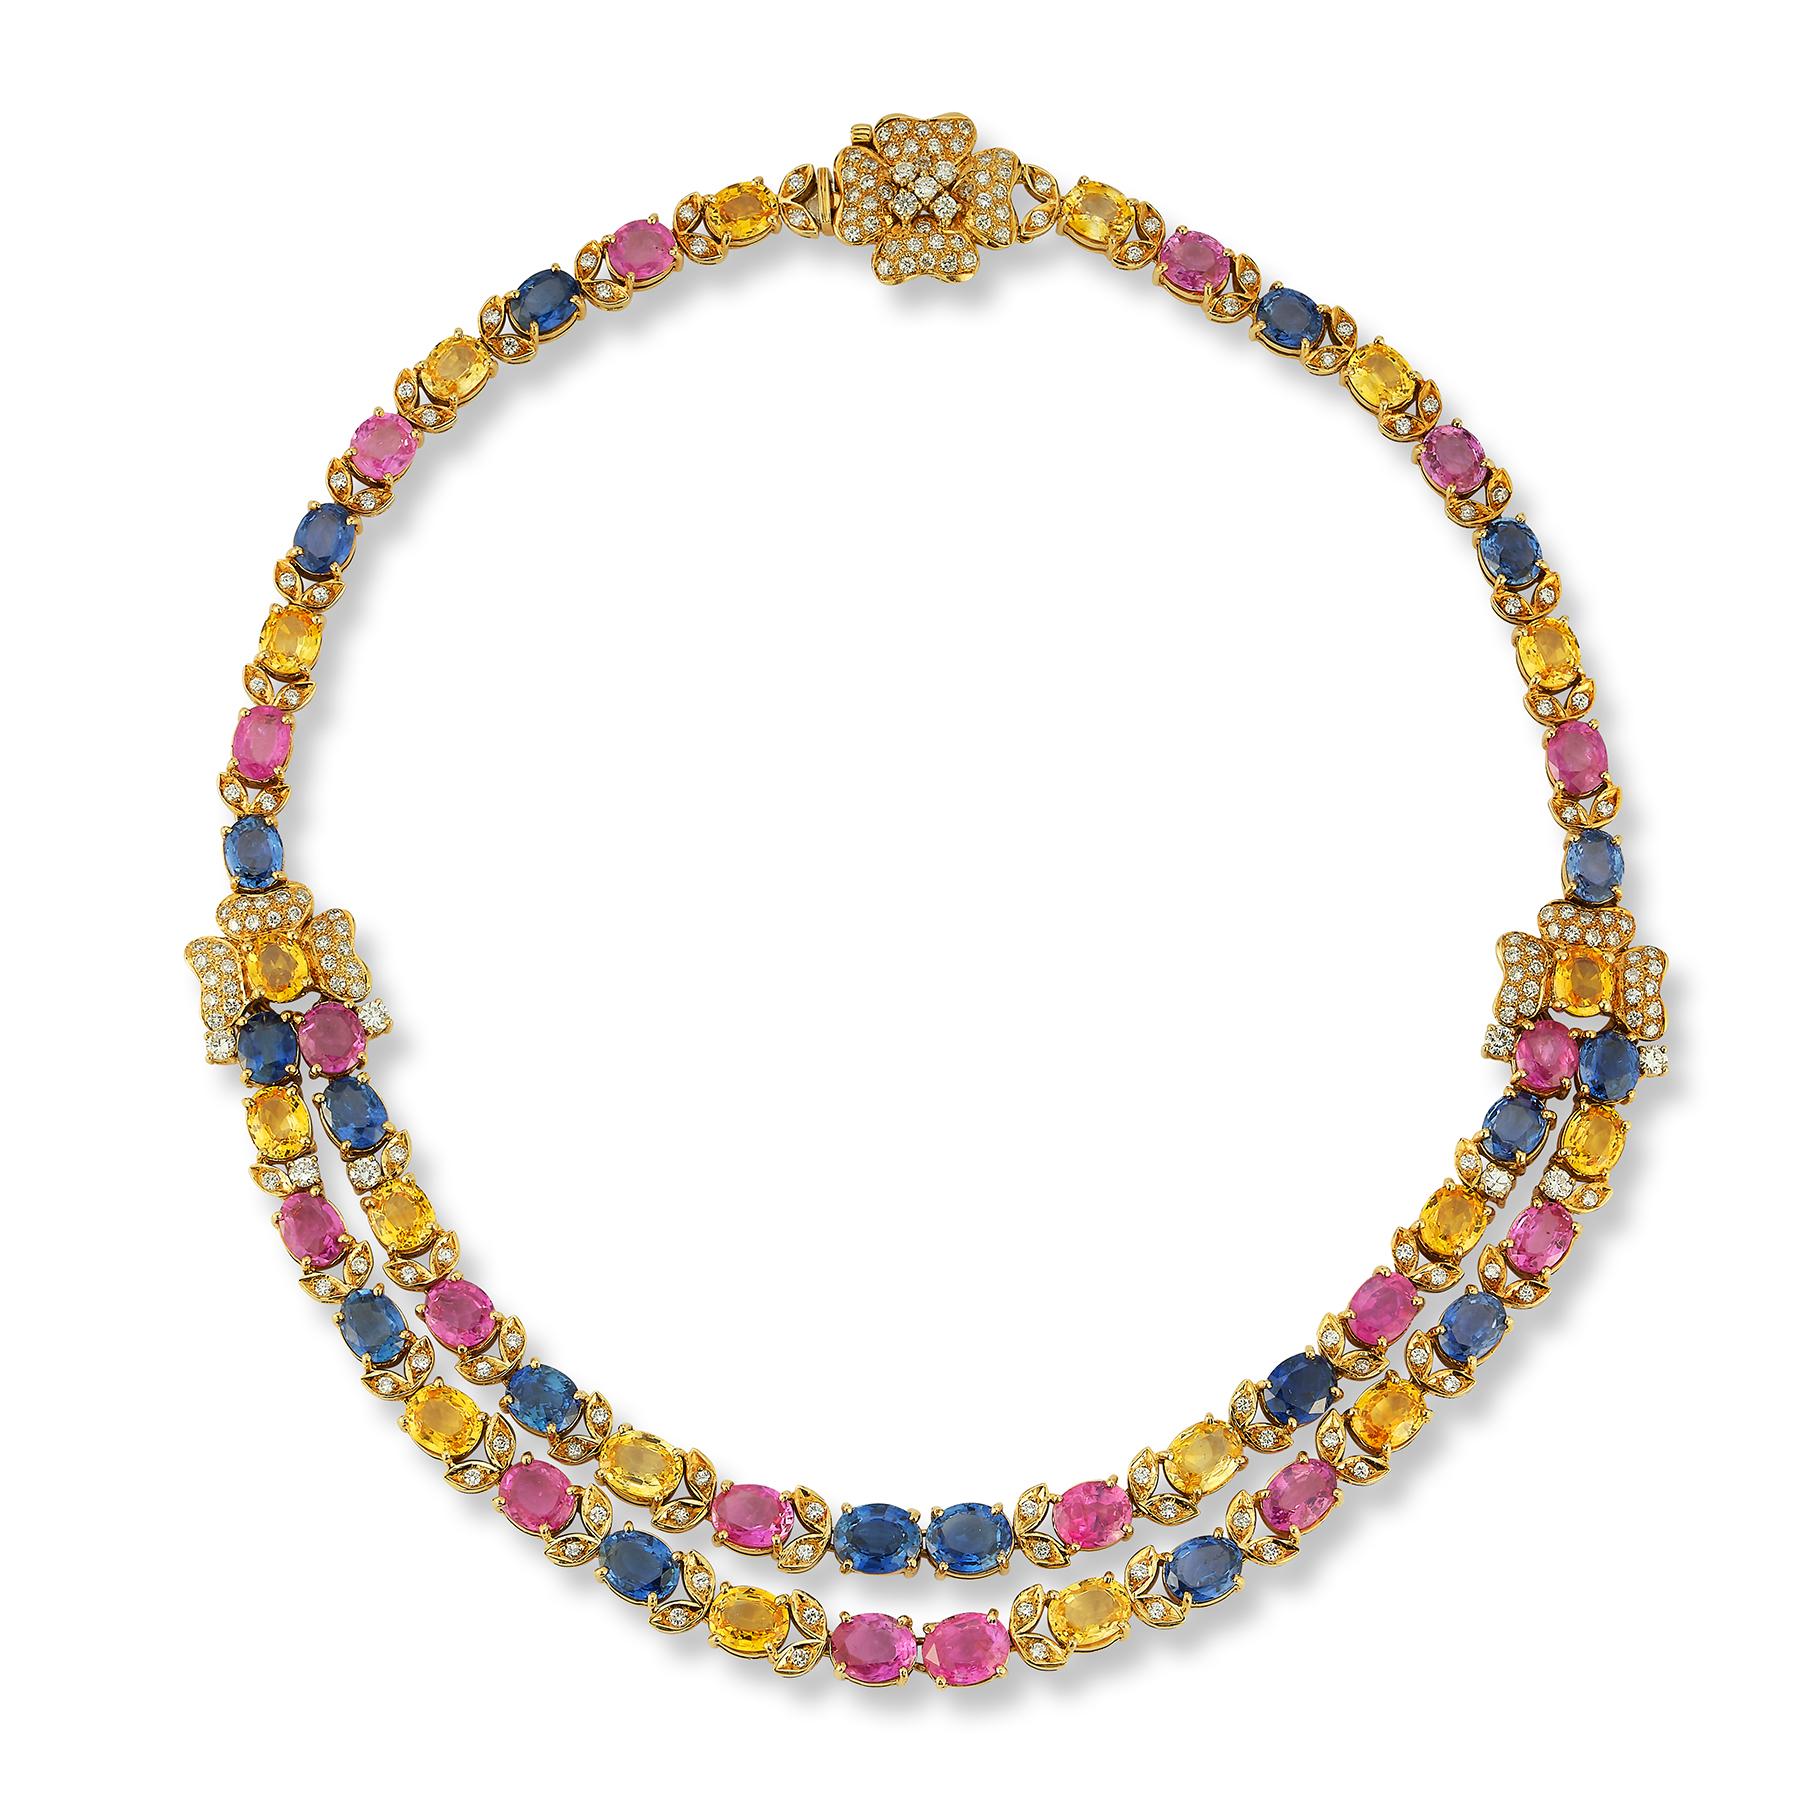 Zweireihige Multicolor-Saphir-Halskette

18K Gelbgold mit Blattwerk und 310 Diamanten im Brillantschliff (ca. 6,37 ct), 20 rosa Saphiren (ca. 29,7 ct), 20 ovalen blauen Saphiren (ca. 25,65 ct) und 30 ovalen gelben Saphiren (ca. 26,61 ct)